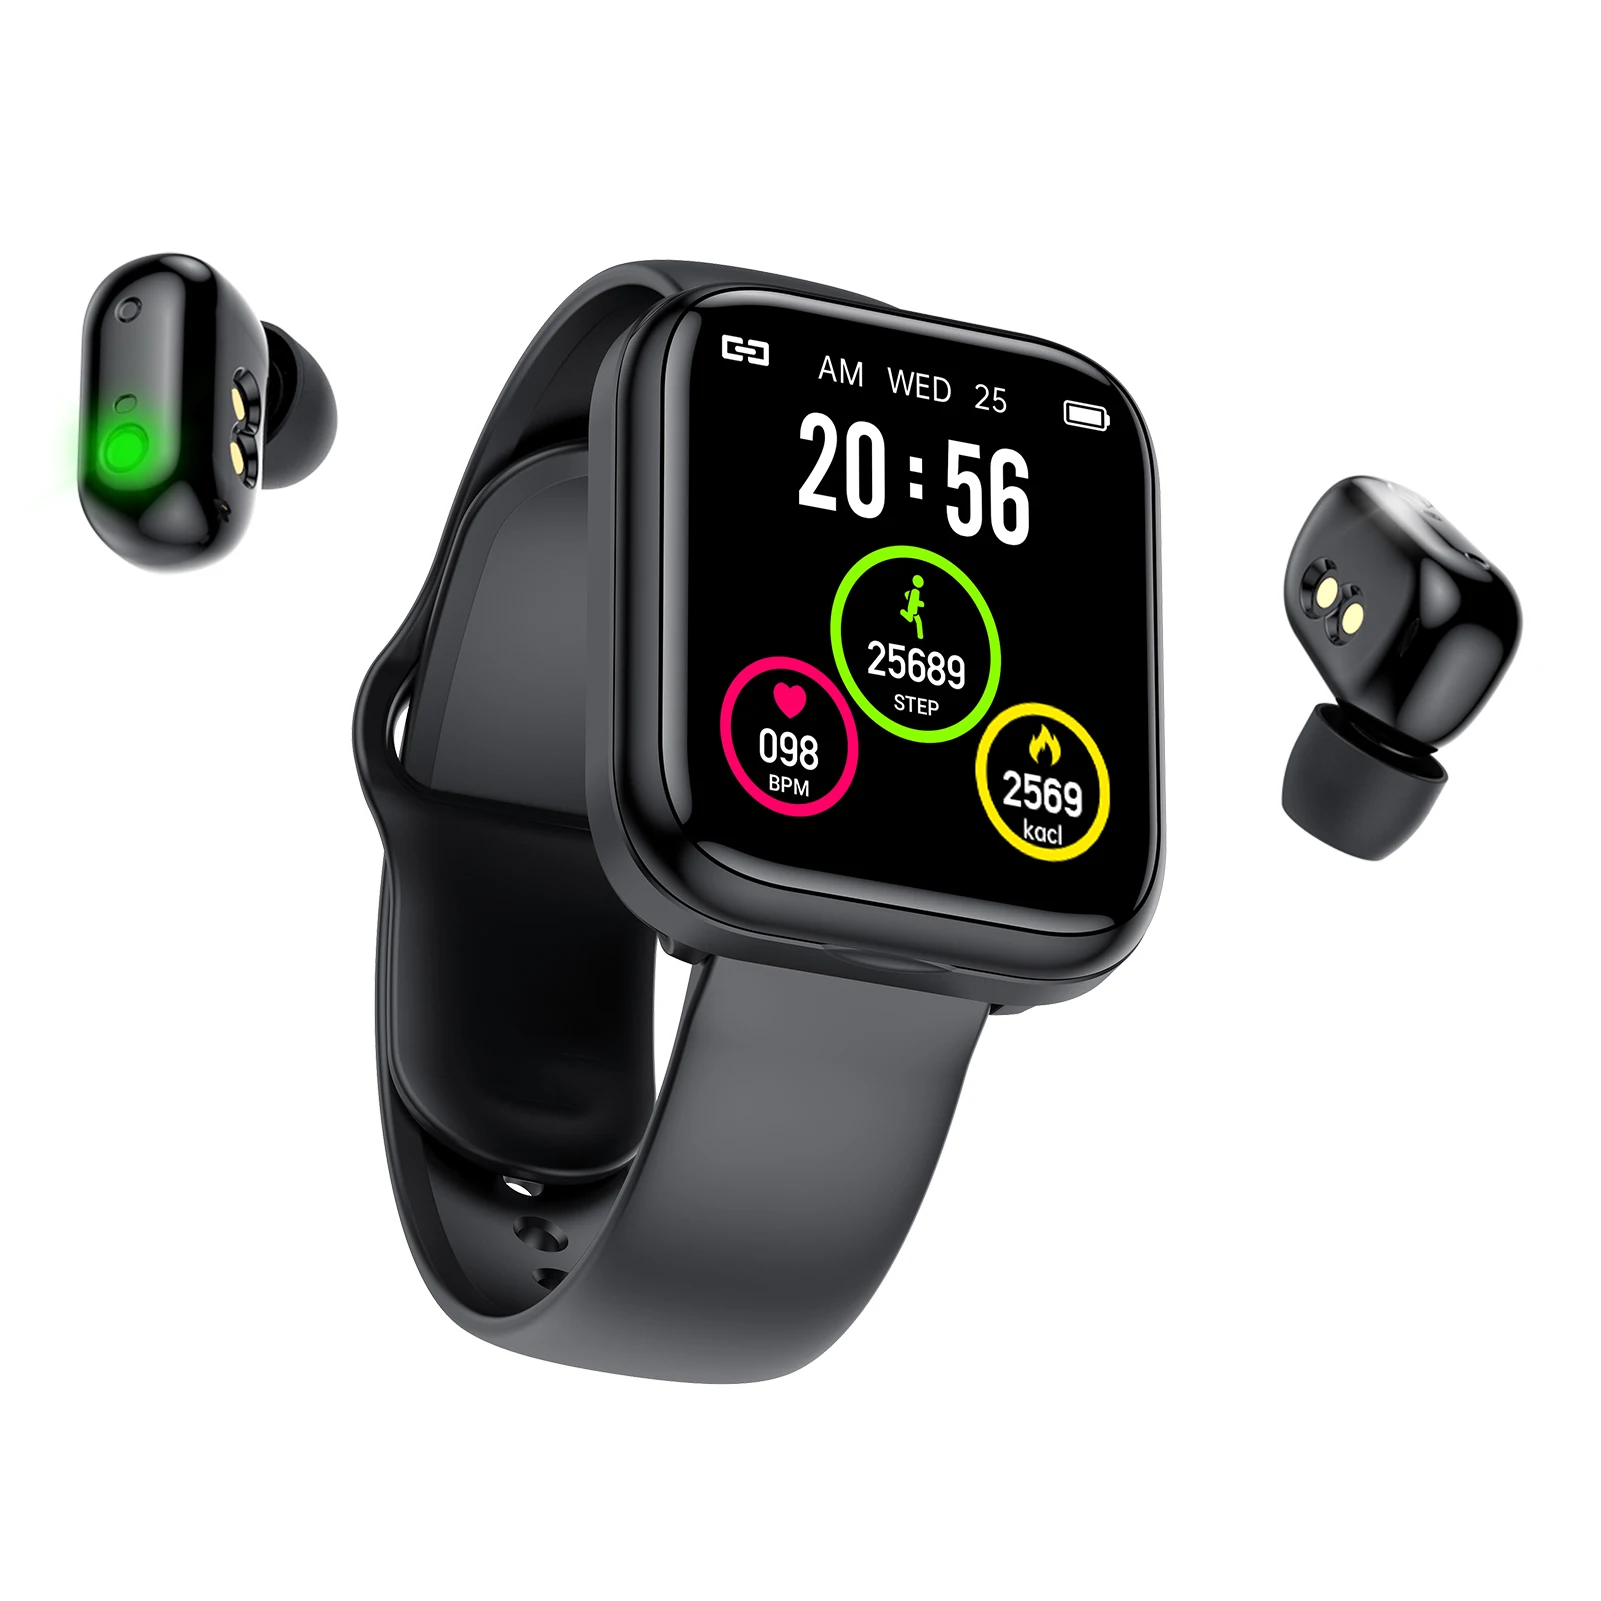 Купить часы с наушниками. TWS Smart watch x8 Pro. Buy 2 in 1 Smart watch with TWS.. Смарт-часы t10 2 в 1, с наушниками-вкладышами Bluetooth, TWS. Блютуз наушники смарт часы.